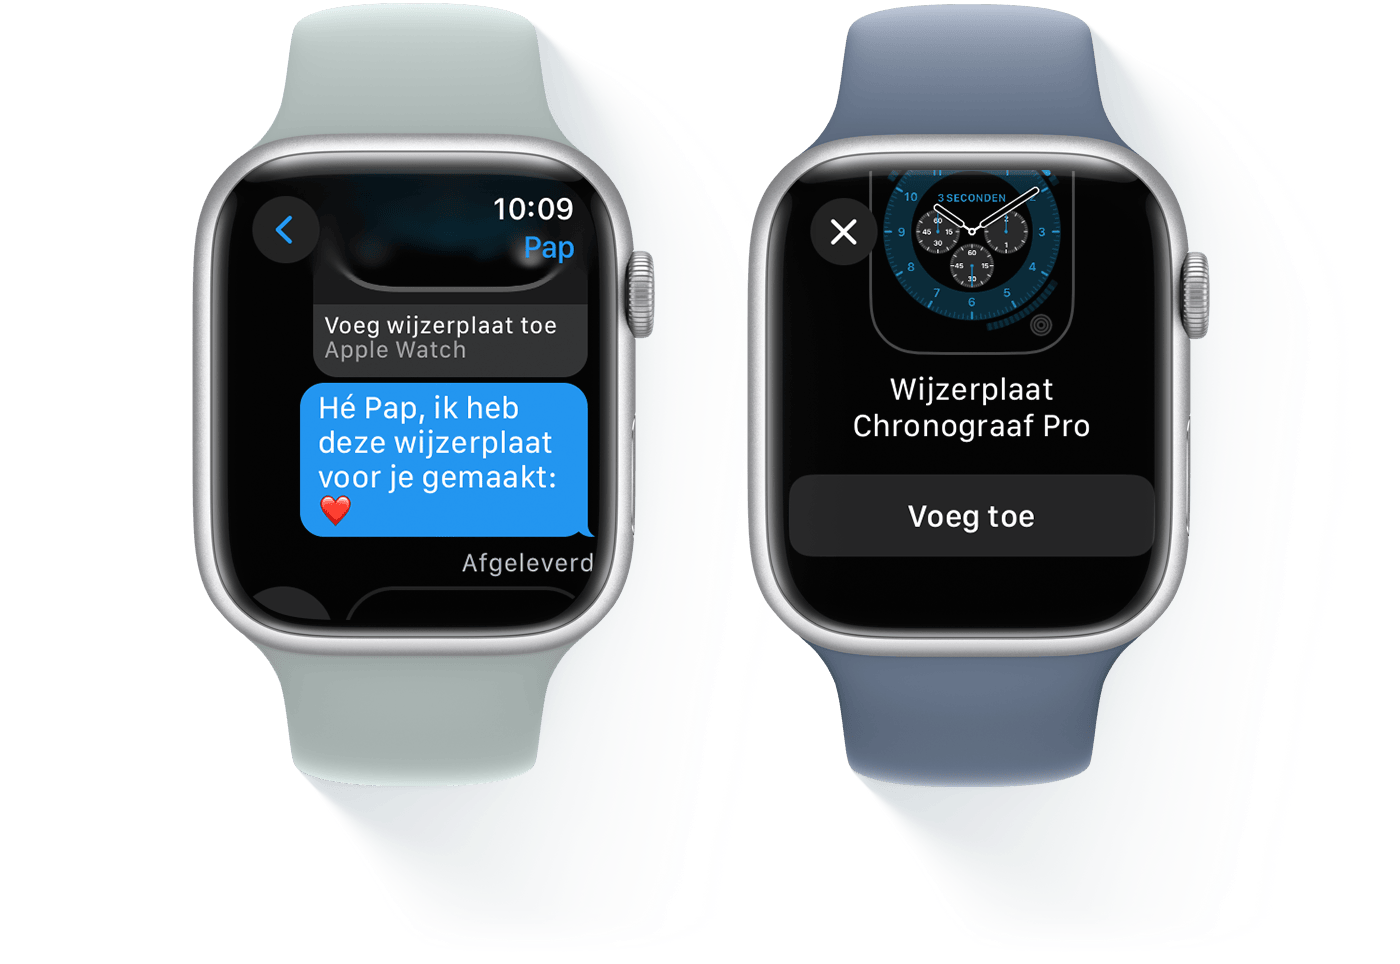 Twee Apple Watches: op de ene wordt een conversatie in een bericht weergegeven en op de andere wordt de wijzerplaat Chronograaf Pro weergegeven